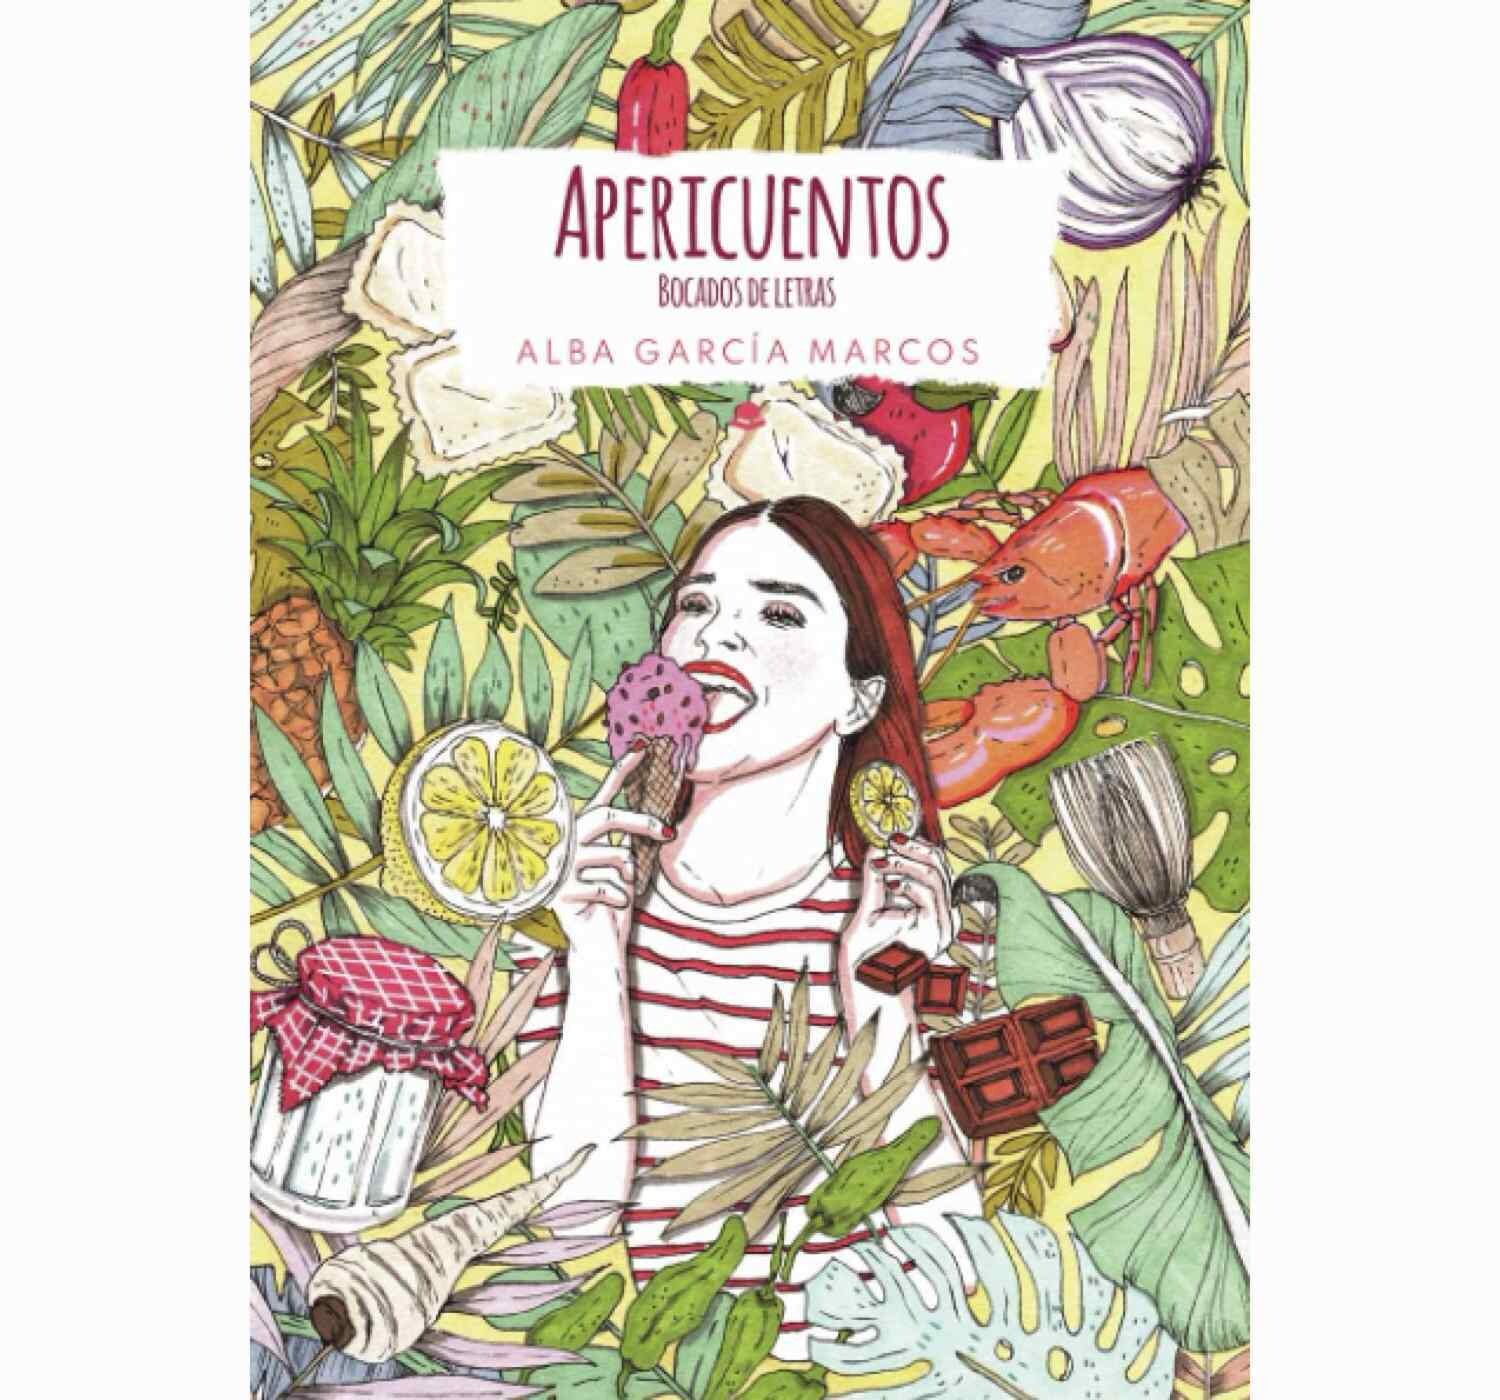 Apericuentos by Alba Garcia Marcos